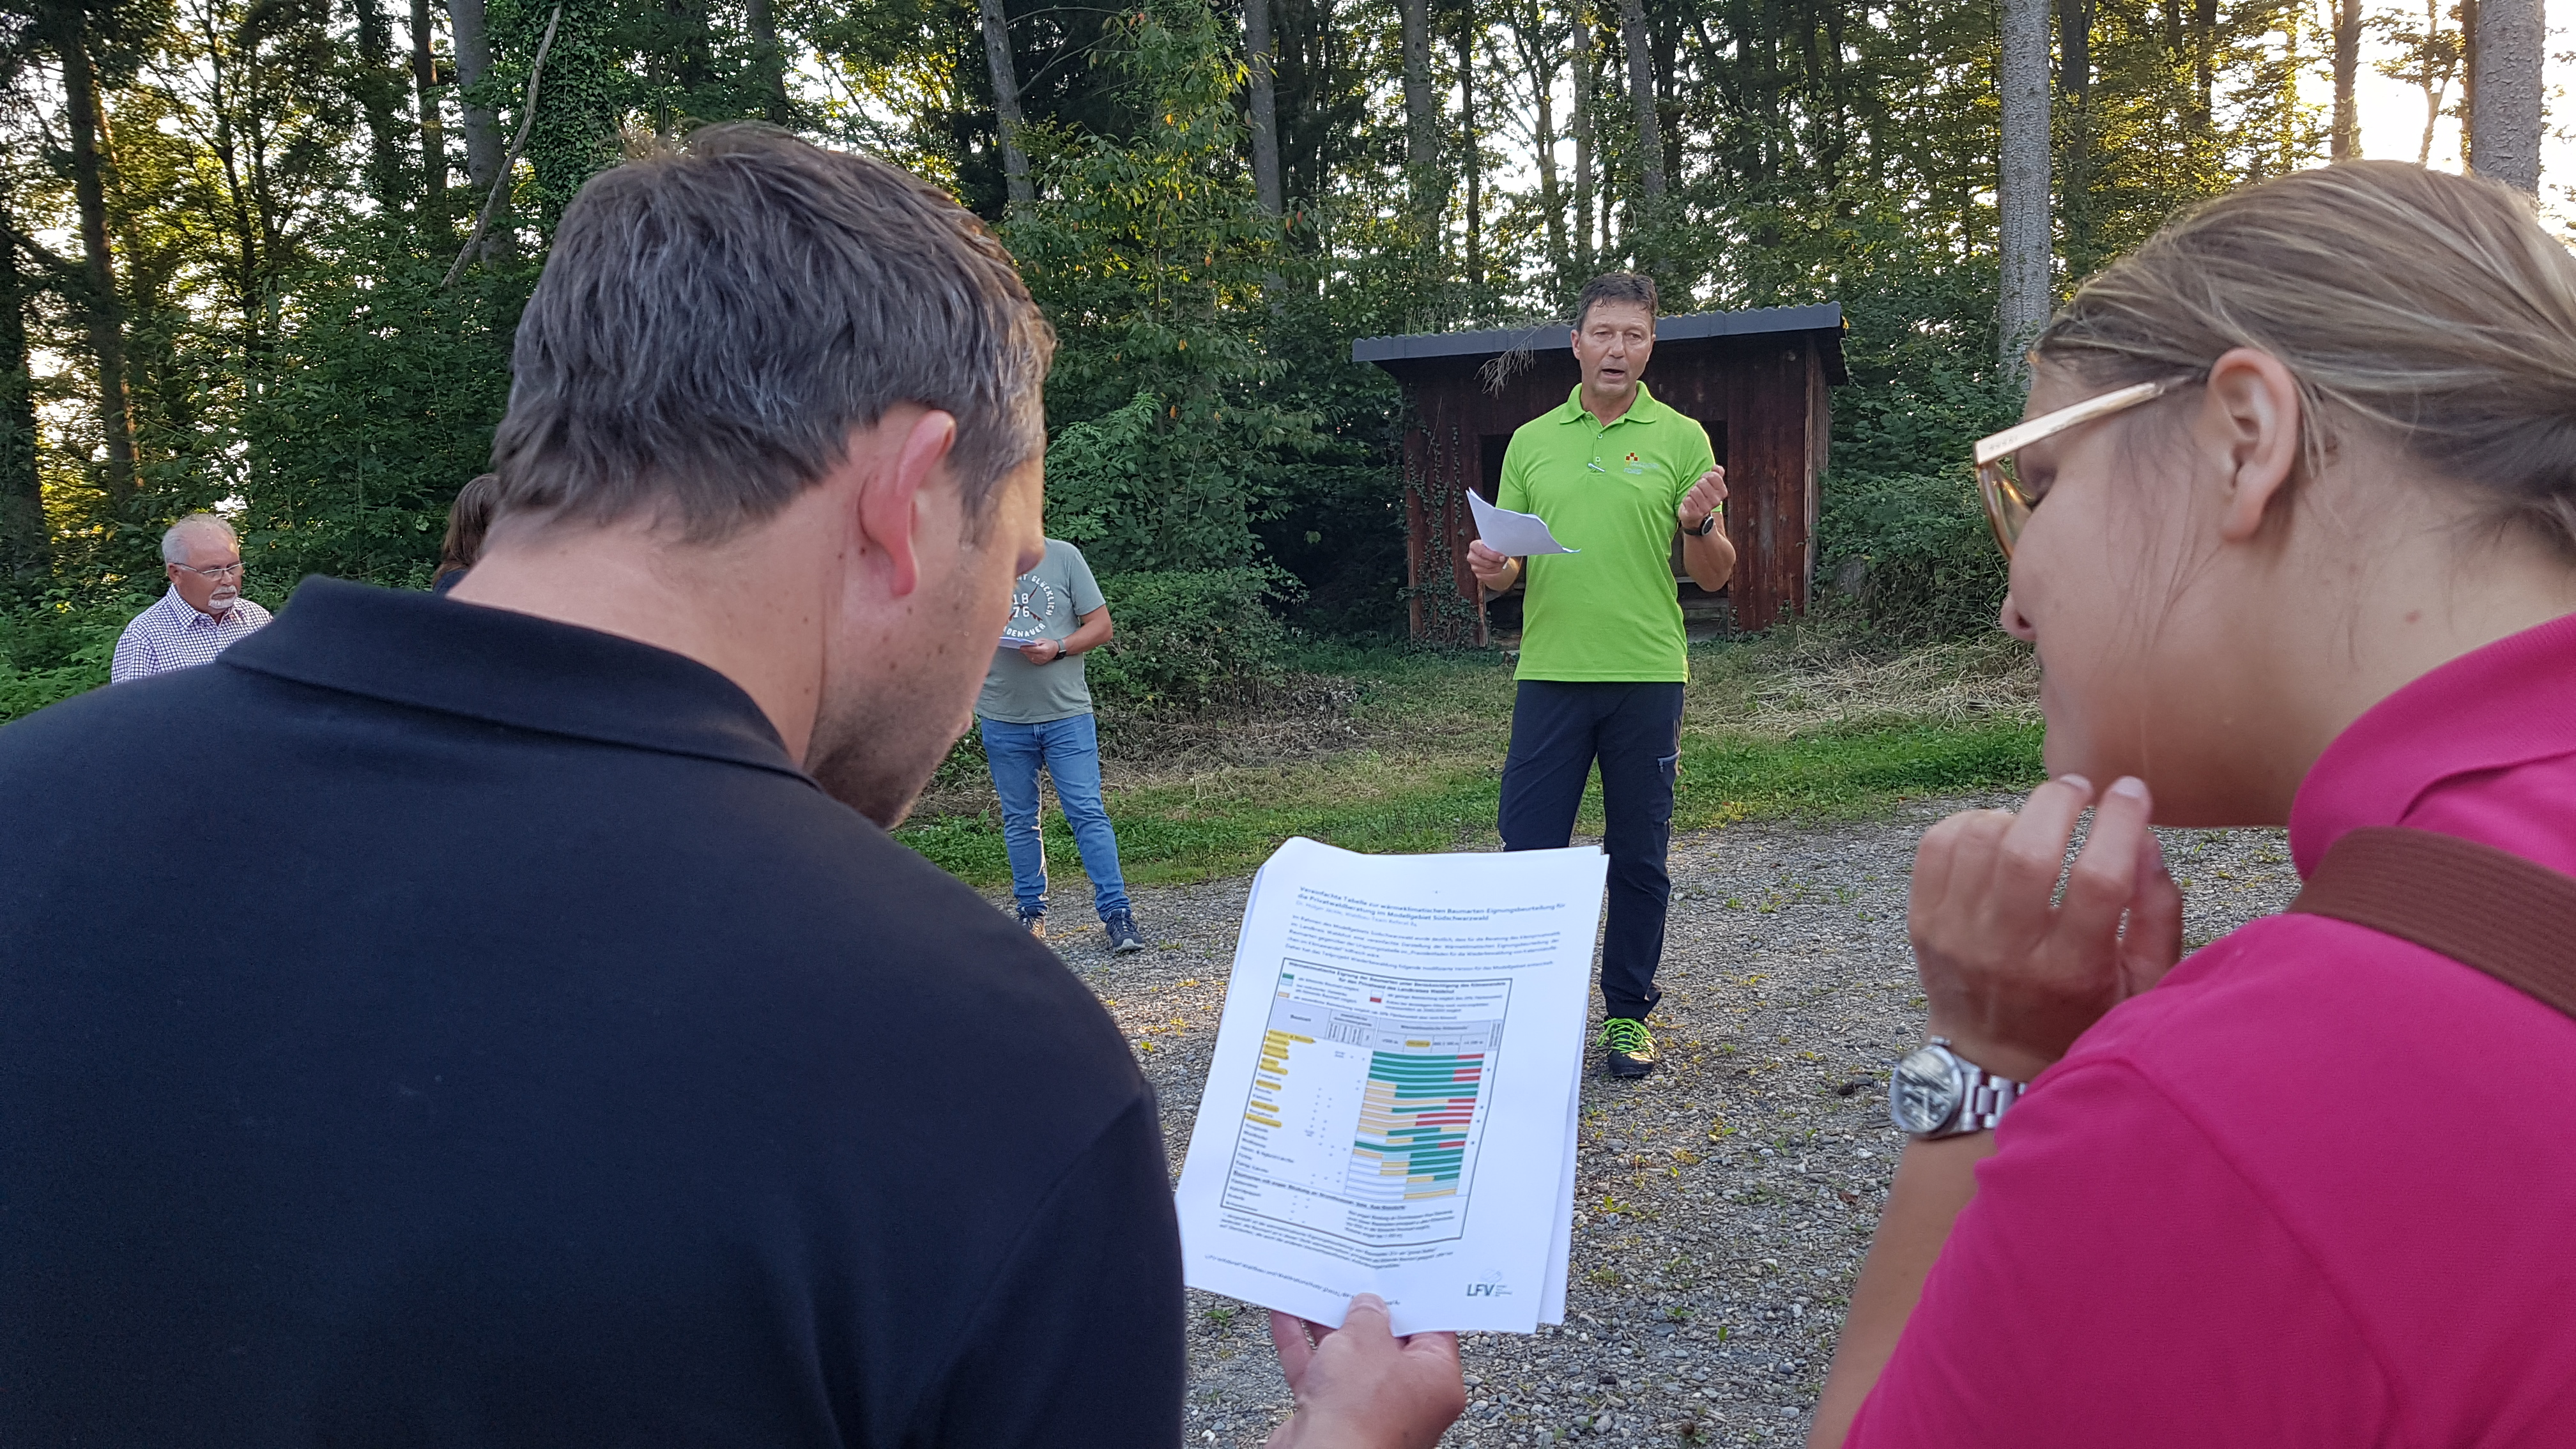 21.91.2021 - Unser Wald - Detaillierte Erläuterungen zur Vegetationsentwicklung am Gehrenberg